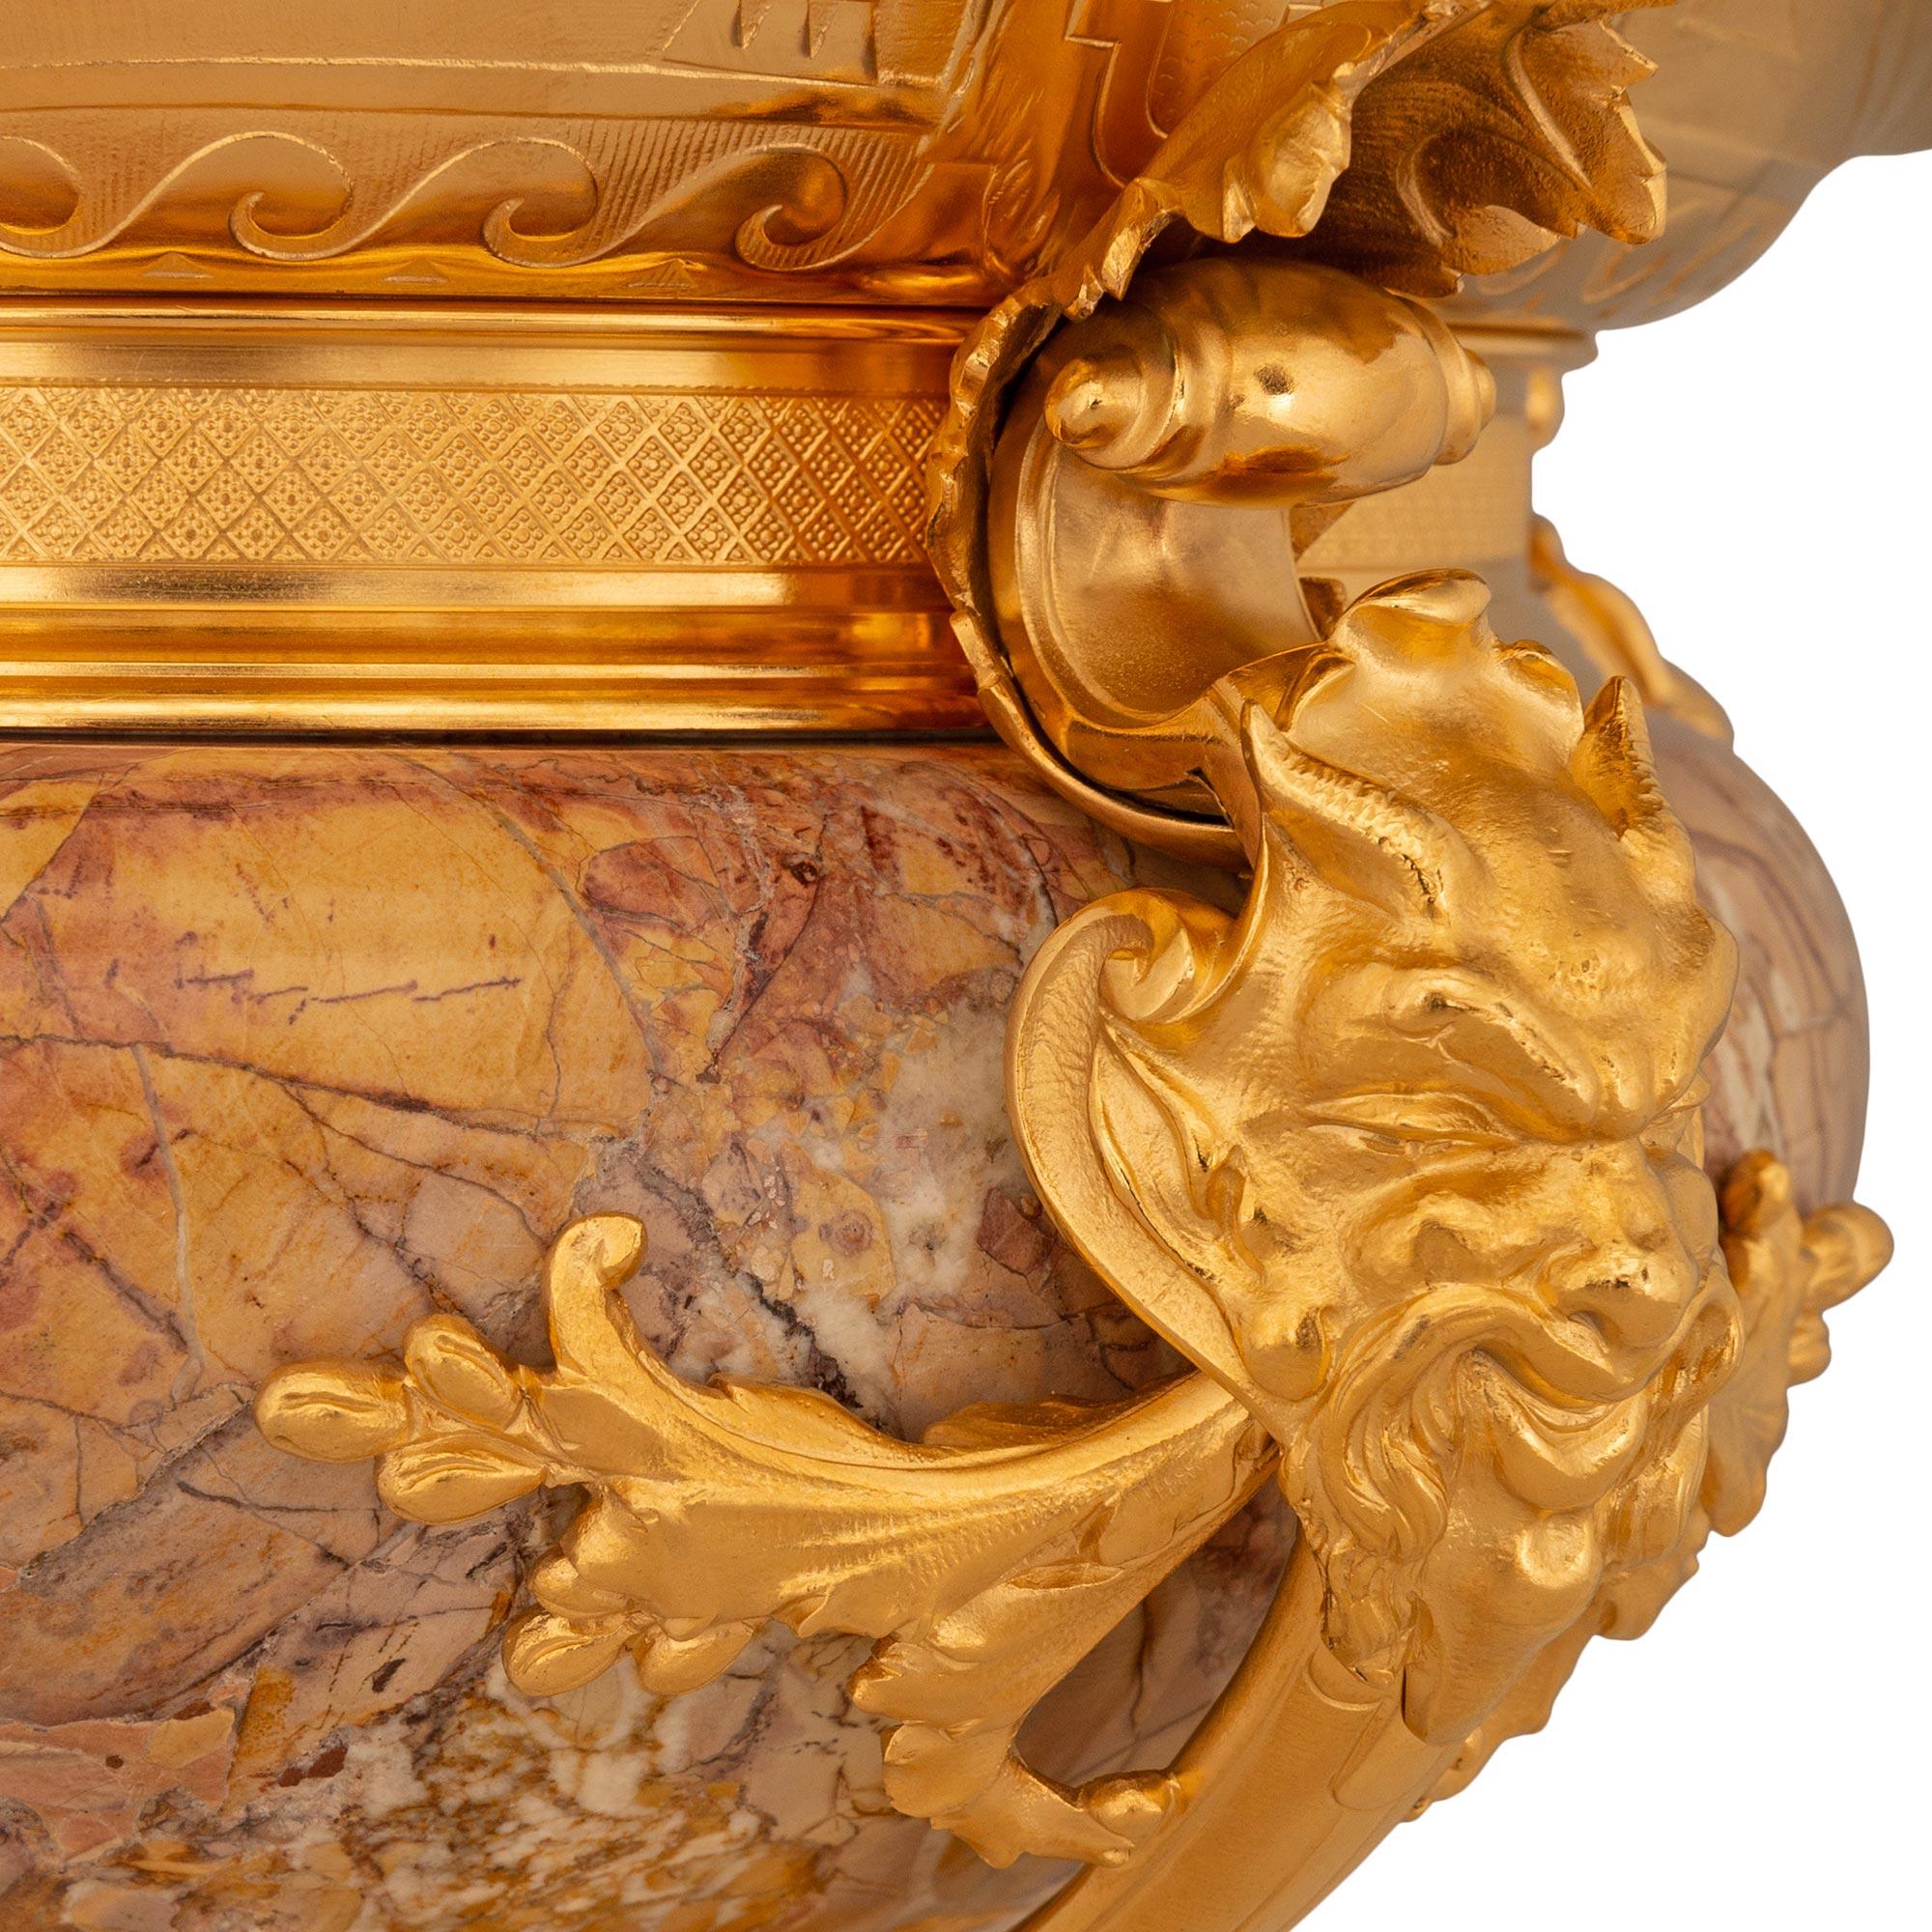 Magnifique jardinière de haute qualité de la Renaissance française du XIXe siècle en bronze doré et marbre Breccia Nuvolata Rosa. Ce superbe centre de table repose sur quatre pieds cabriole avec des pieds à pattes. Chaque pied est relié par une